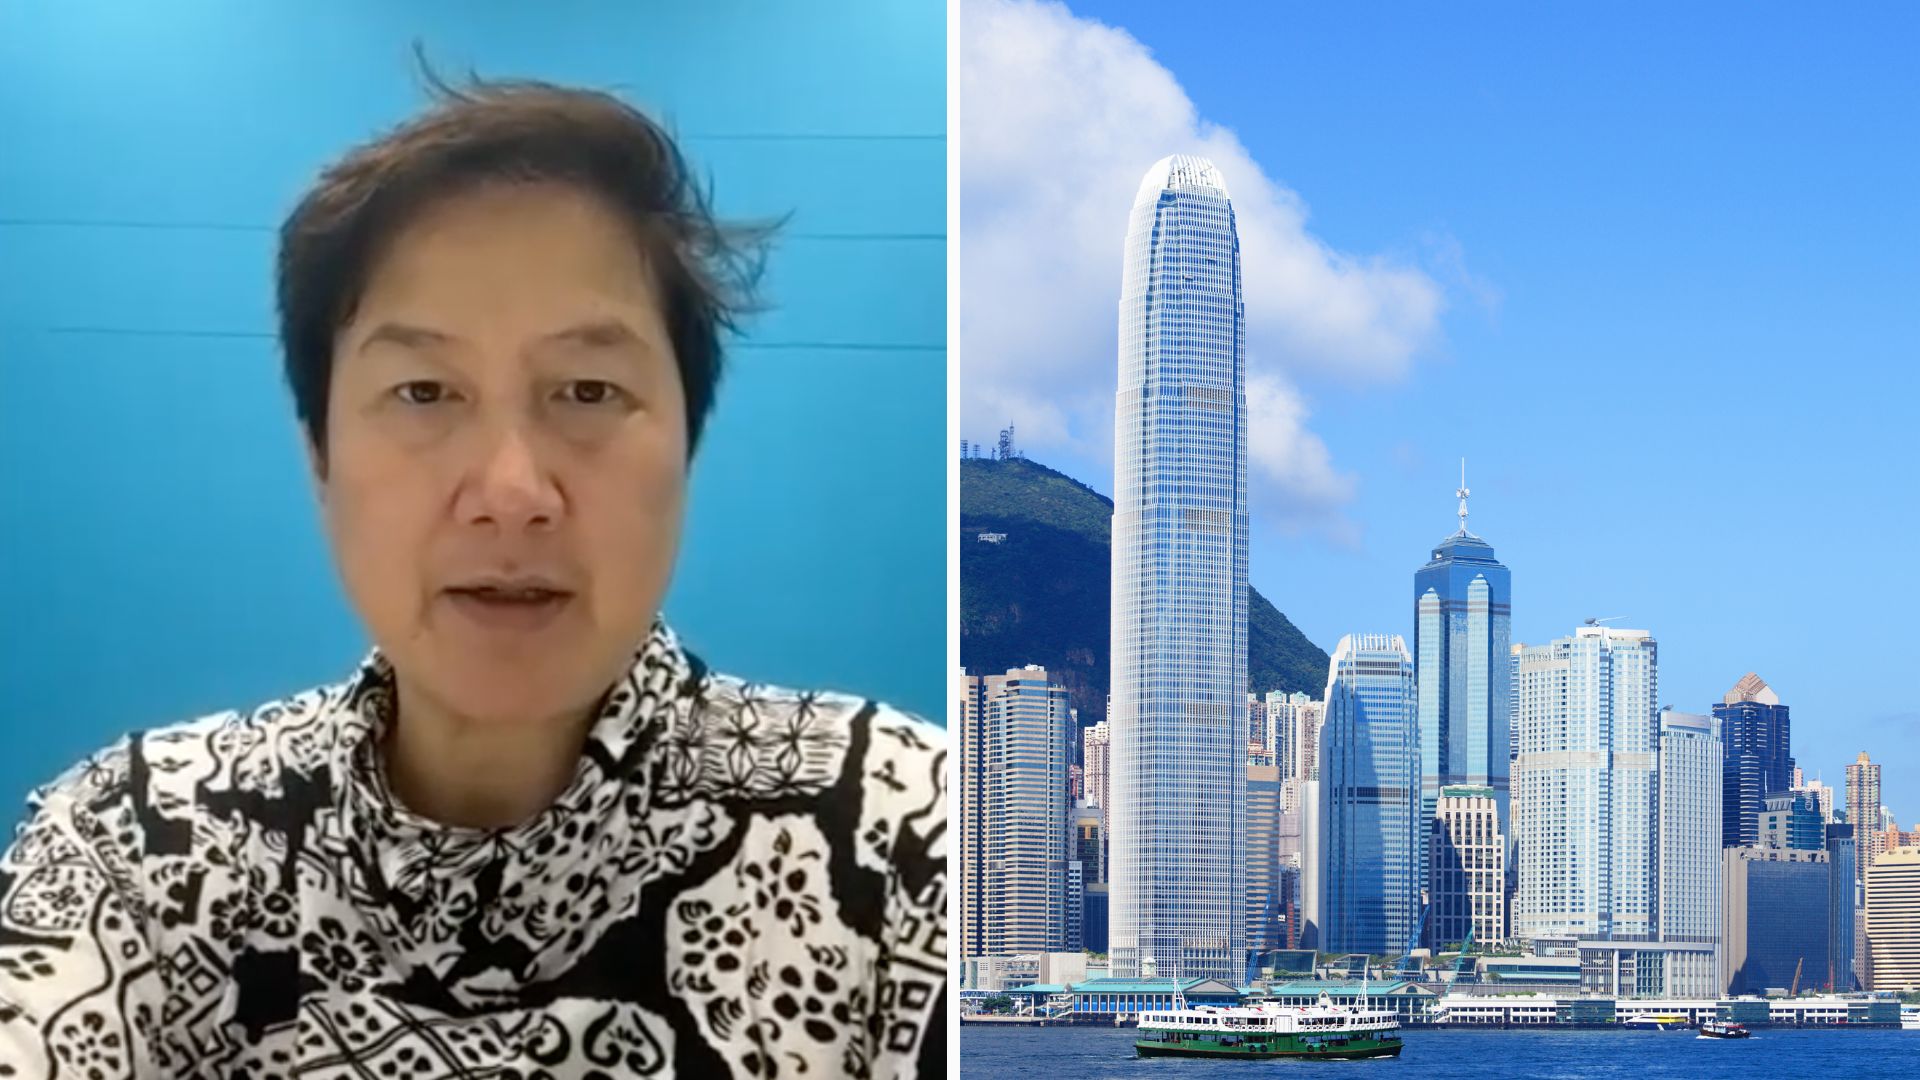 سابق ایس ایف سی ریگولیٹر کا کہنا ہے کہ مطالبہ بڑھنے کے ساتھ ہی ہانگ کانگ کو کرپٹو لائسنس کی درخواستوں میں بیک لاگ کا سامنا کرنا پڑ سکتا ہے